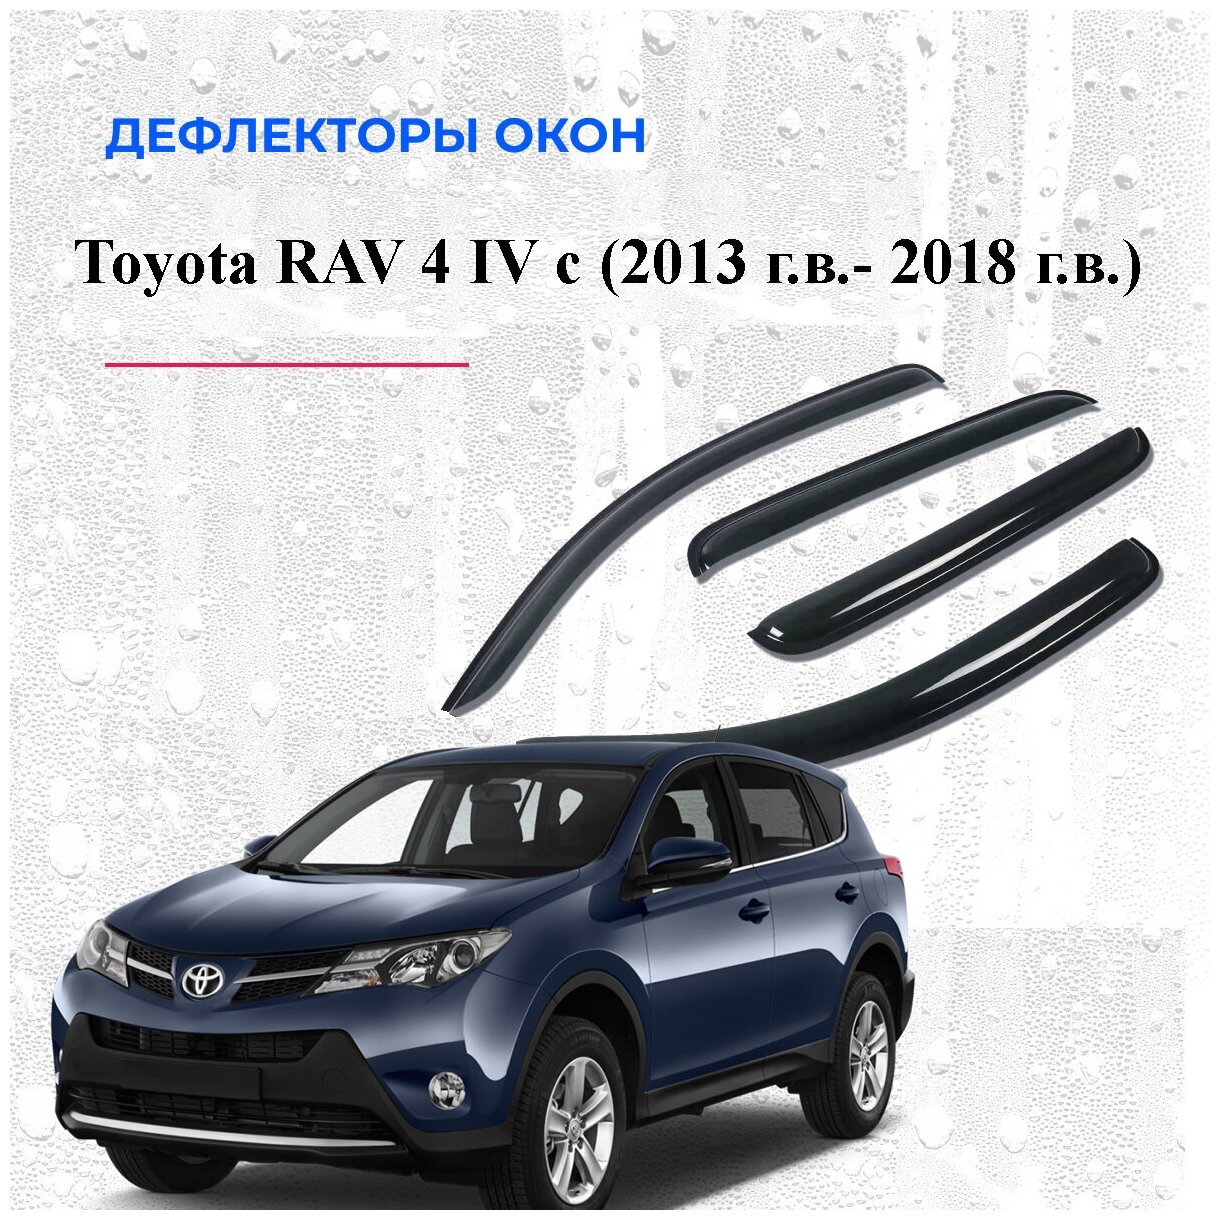 Дефлекторы боковых окон на Toyota RAV 4 IV 2013 г. в.-2018 г. в.